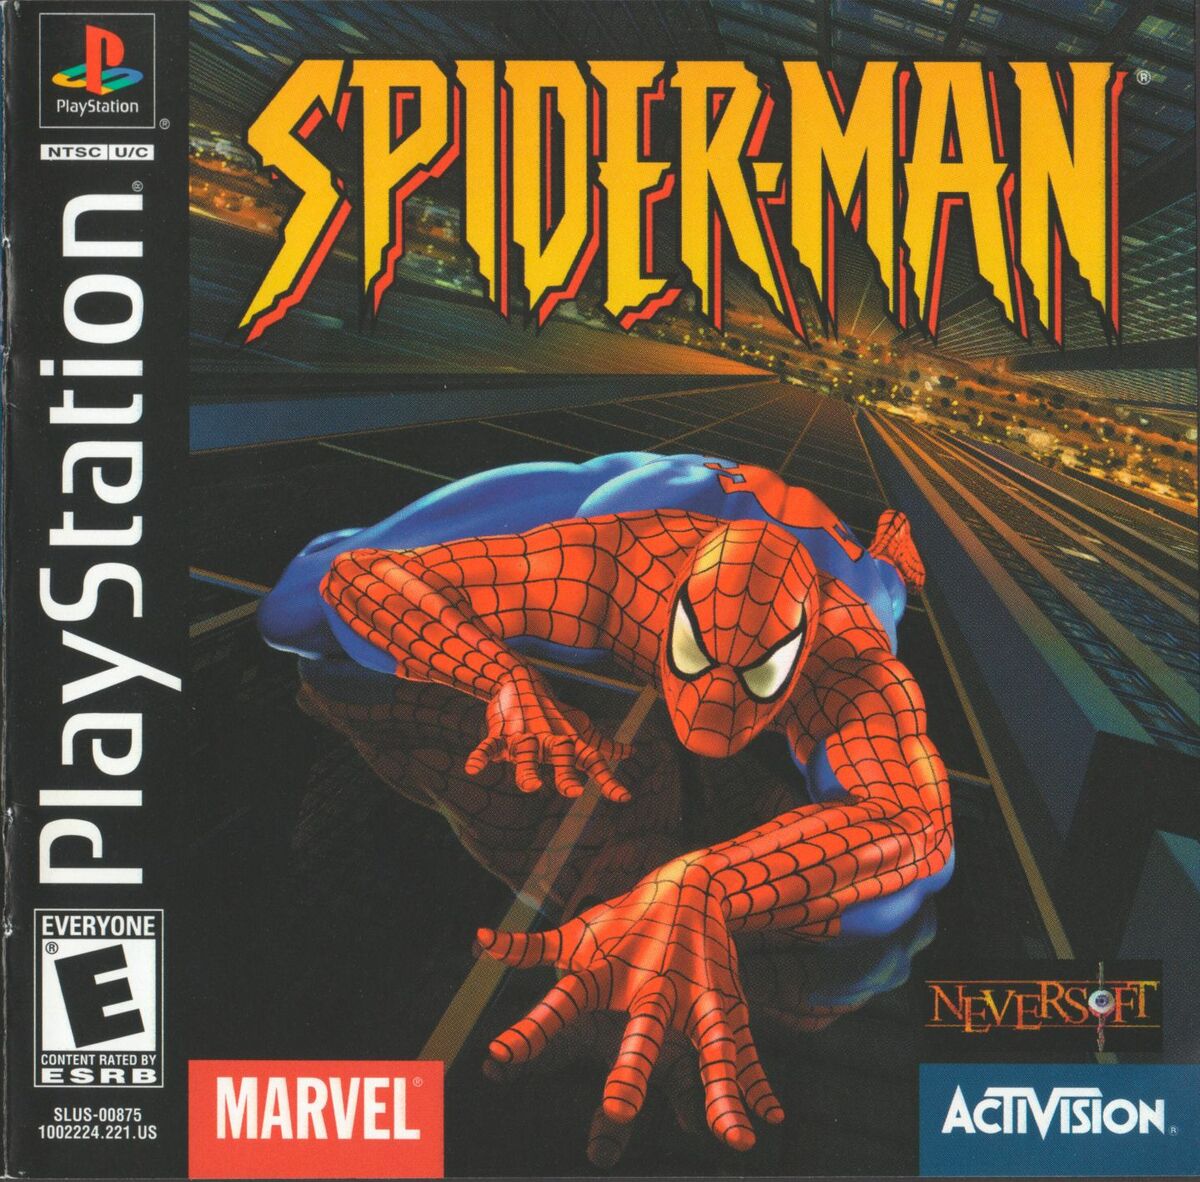 Spider-Man (jogo eletrônico de 2000) – Wikipédia, a enciclopédia livre